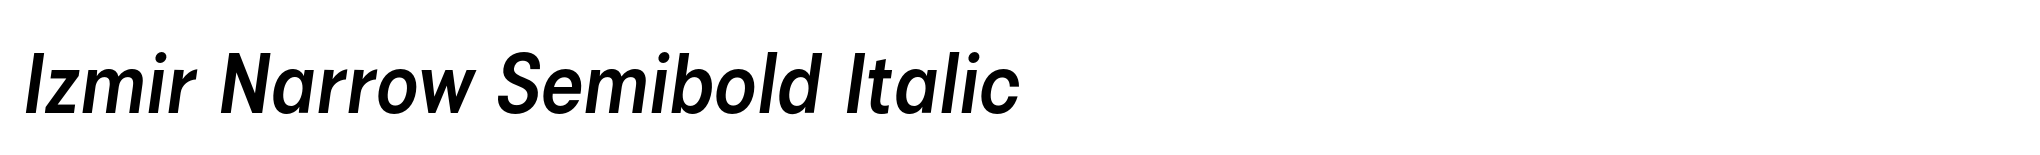 Izmir Narrow Semibold Italic image